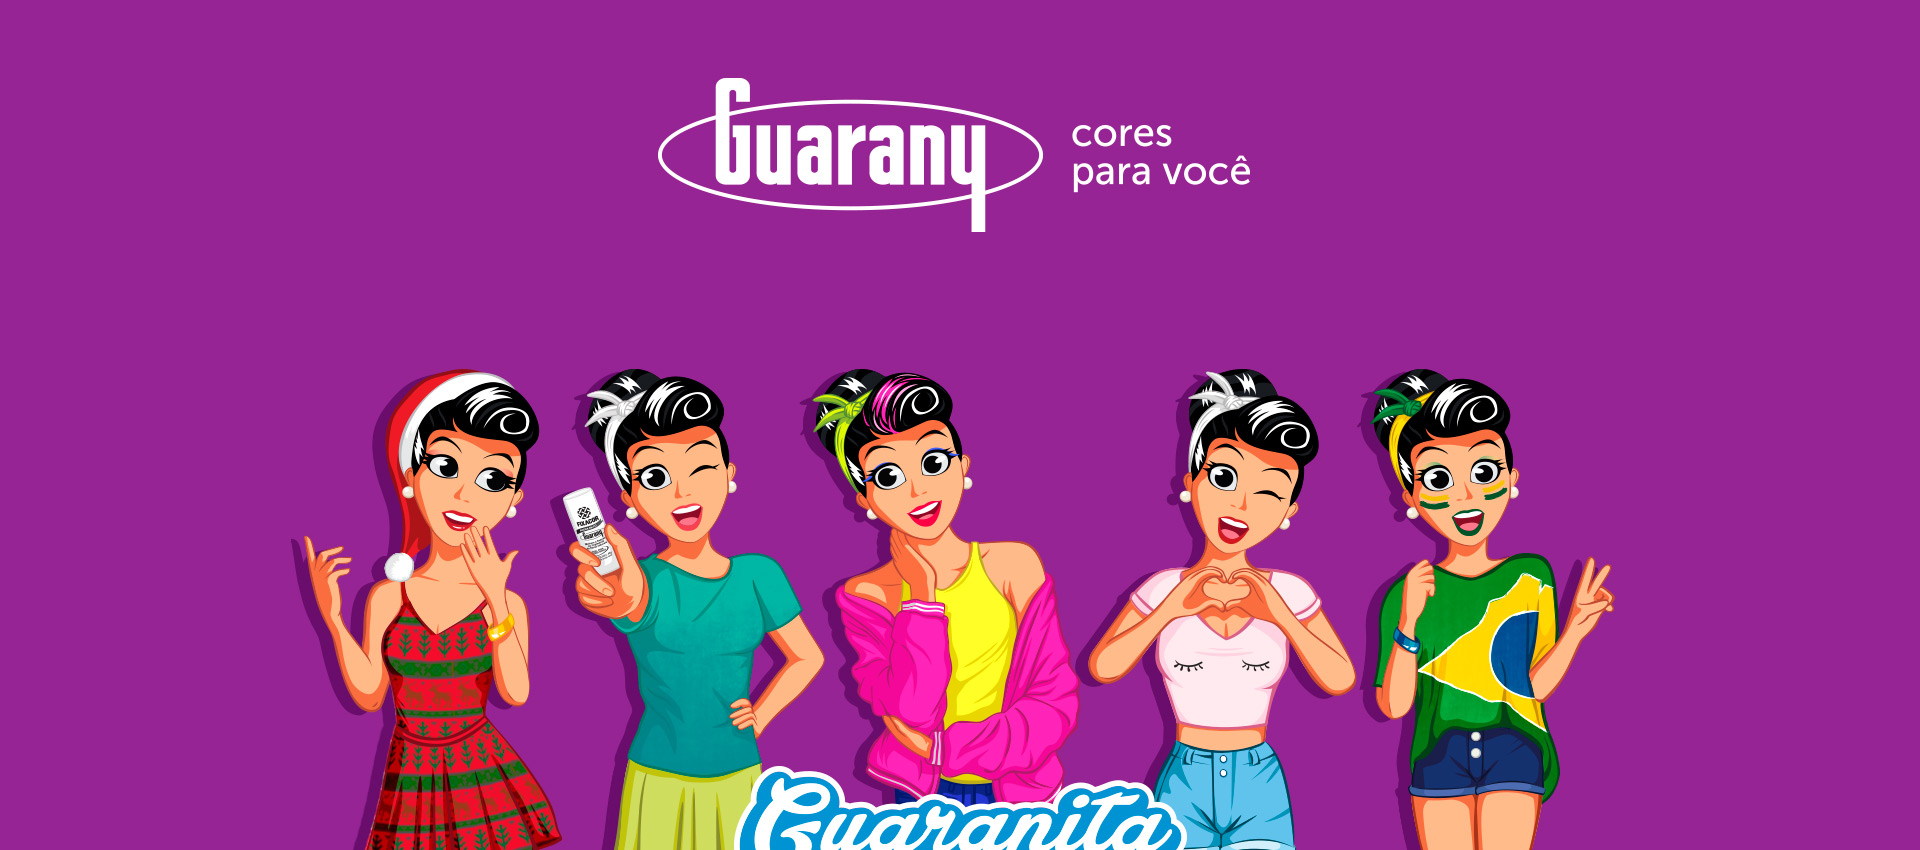 Corantes Guarany